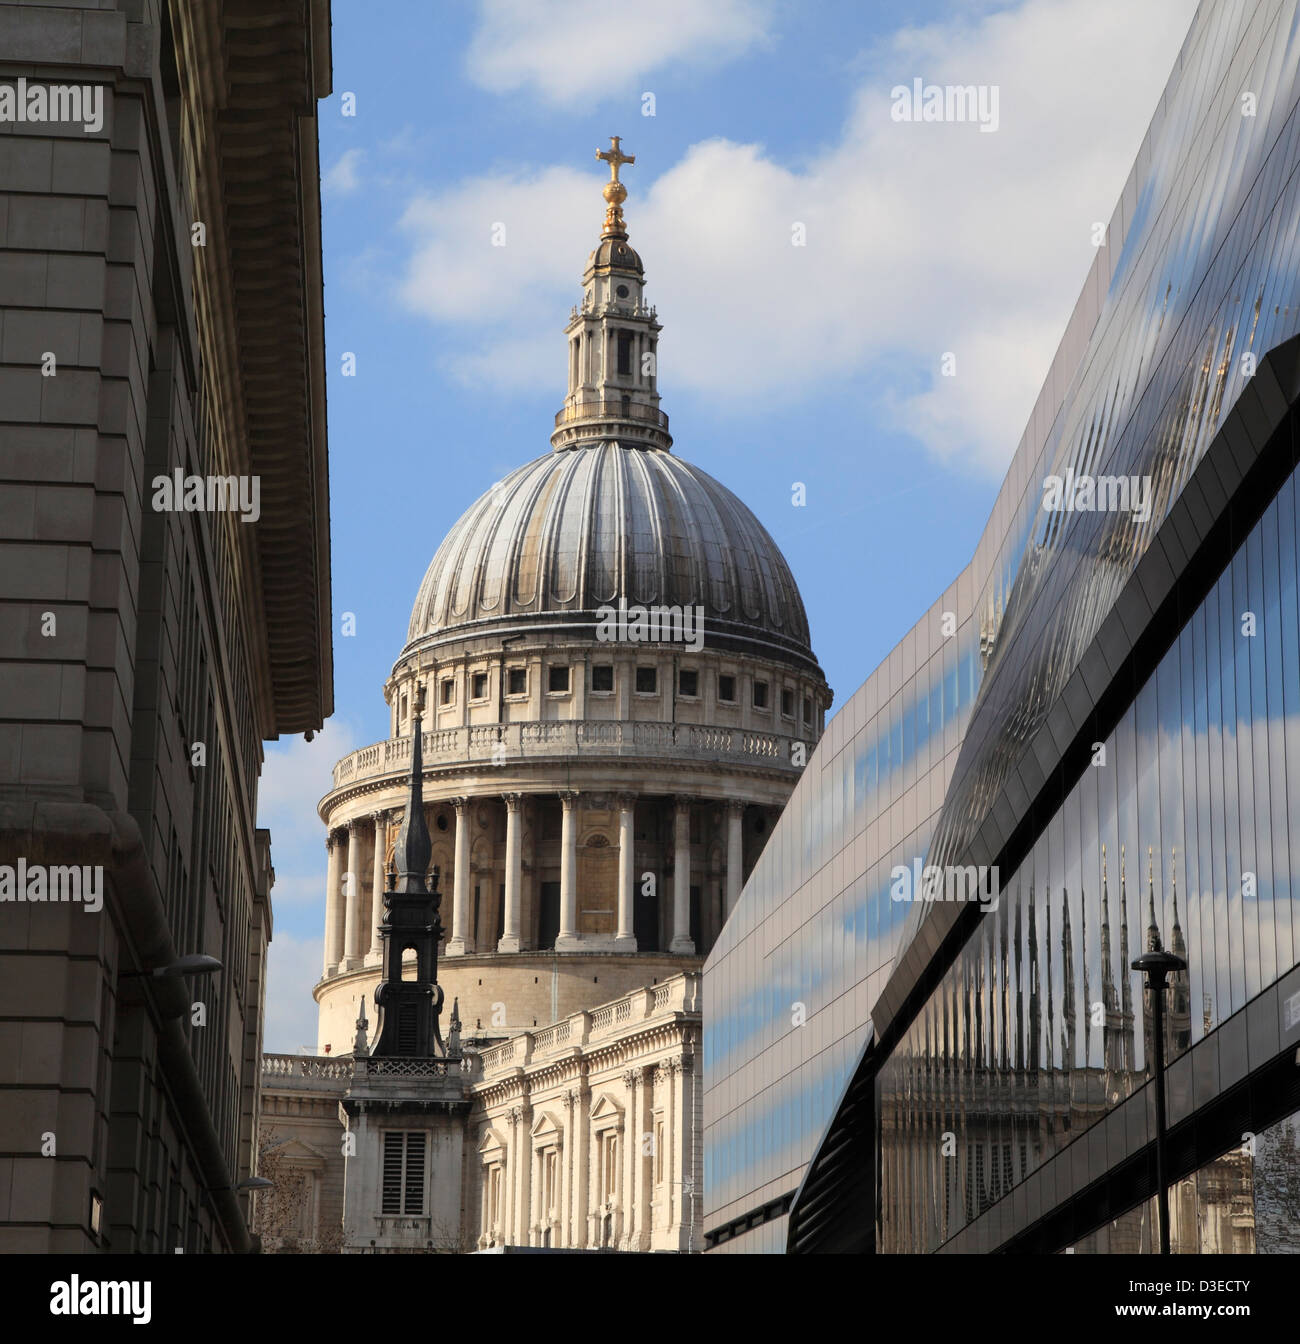 La Cathédrale de St Paul, vue à travers les immeubles de bureaux Ville de London England UK GO Banque D'Images